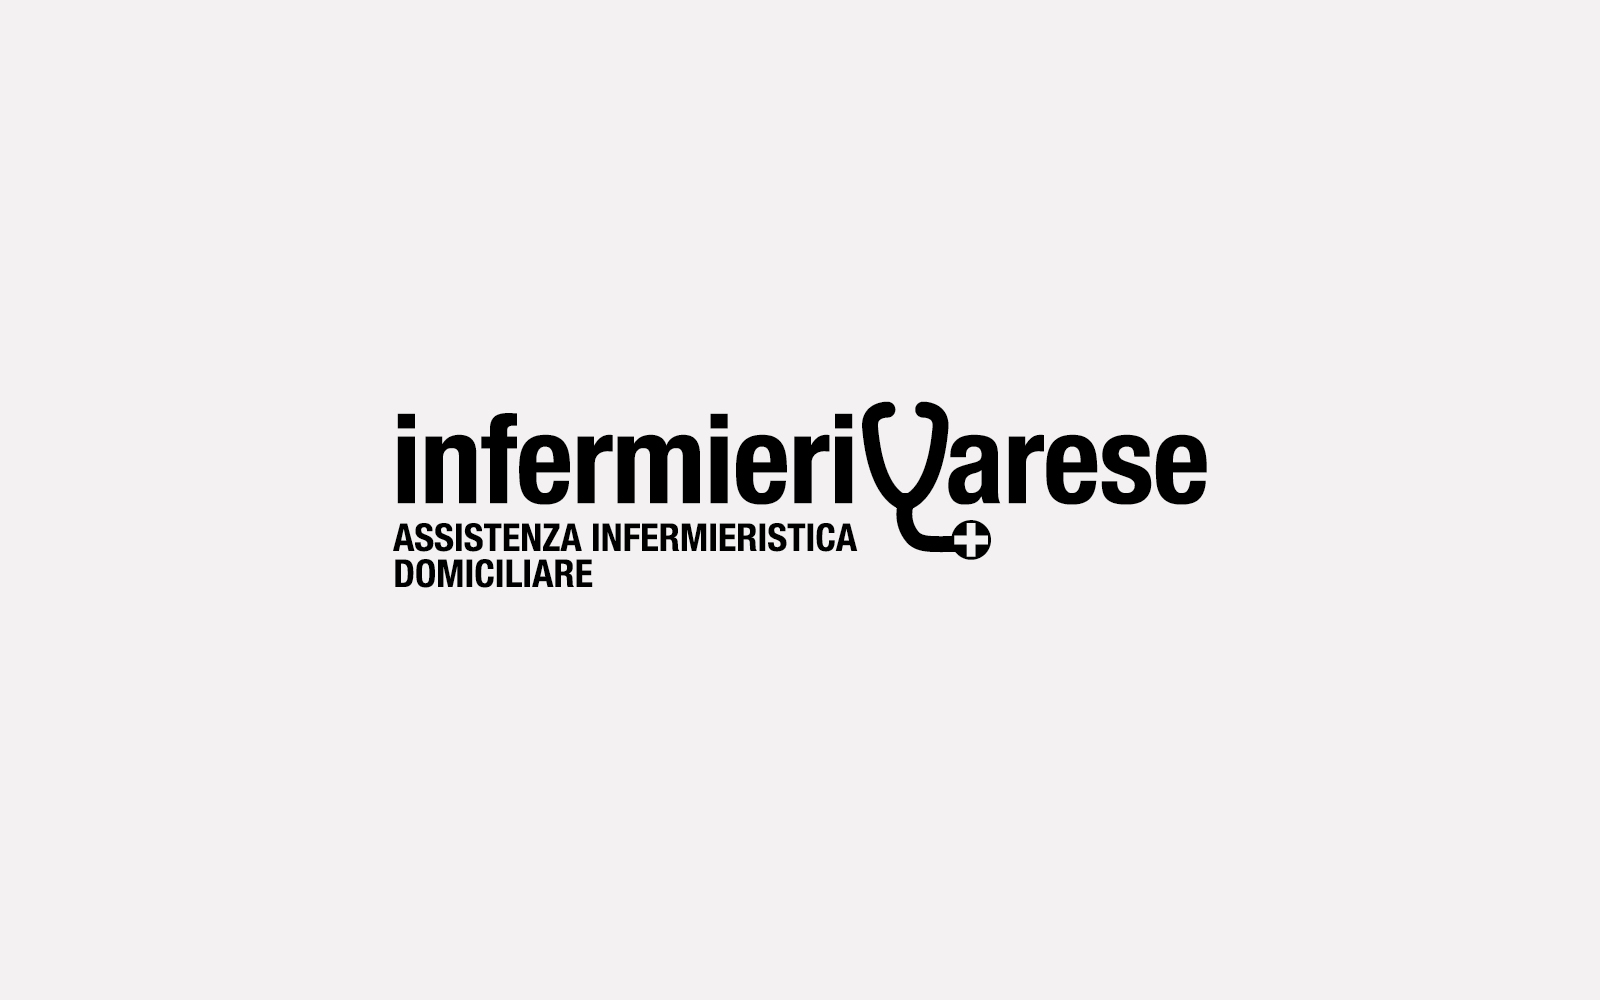 marchio in bianconero per azienda Infermieri Varese, creato dalla agenzia grafica diadestudio arco di trento